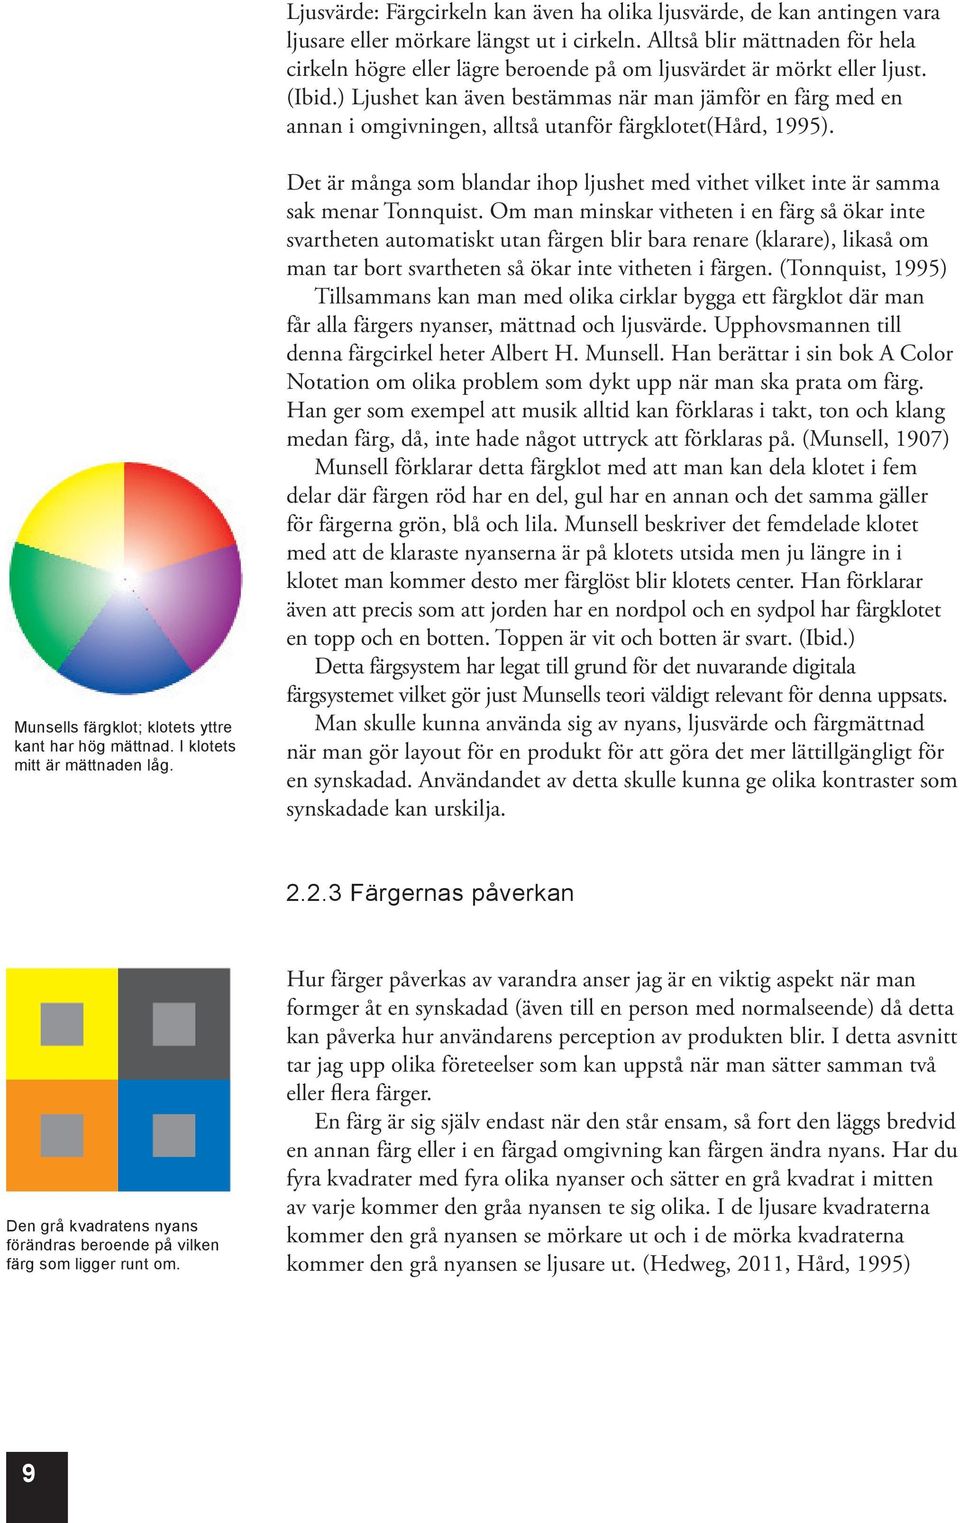 ) Ljushet kan även bestämmas när man jämför en färg med en annan i omgivningen, alltså utanför färgklotet(hård, 1995). Munsells färgklot; klotets yttre kant har hög mättnad.